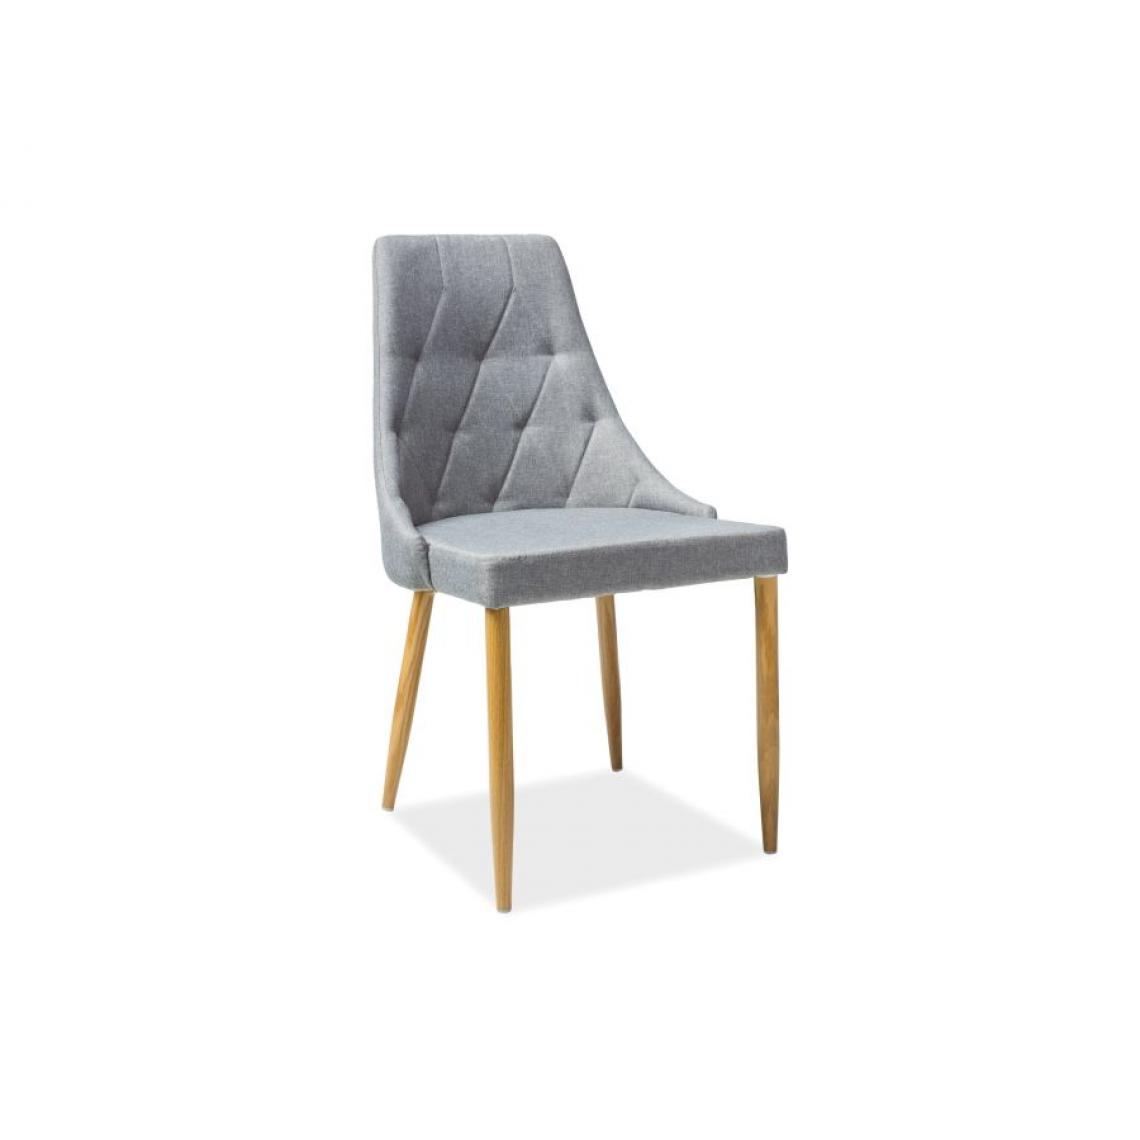 Hucoco - TRIO | Chaise moderne de style scandinave | Dimensions: 90x50x46 cm | Rembourrée en tissu | Structure en métal rembourrée - Gris - Chaises